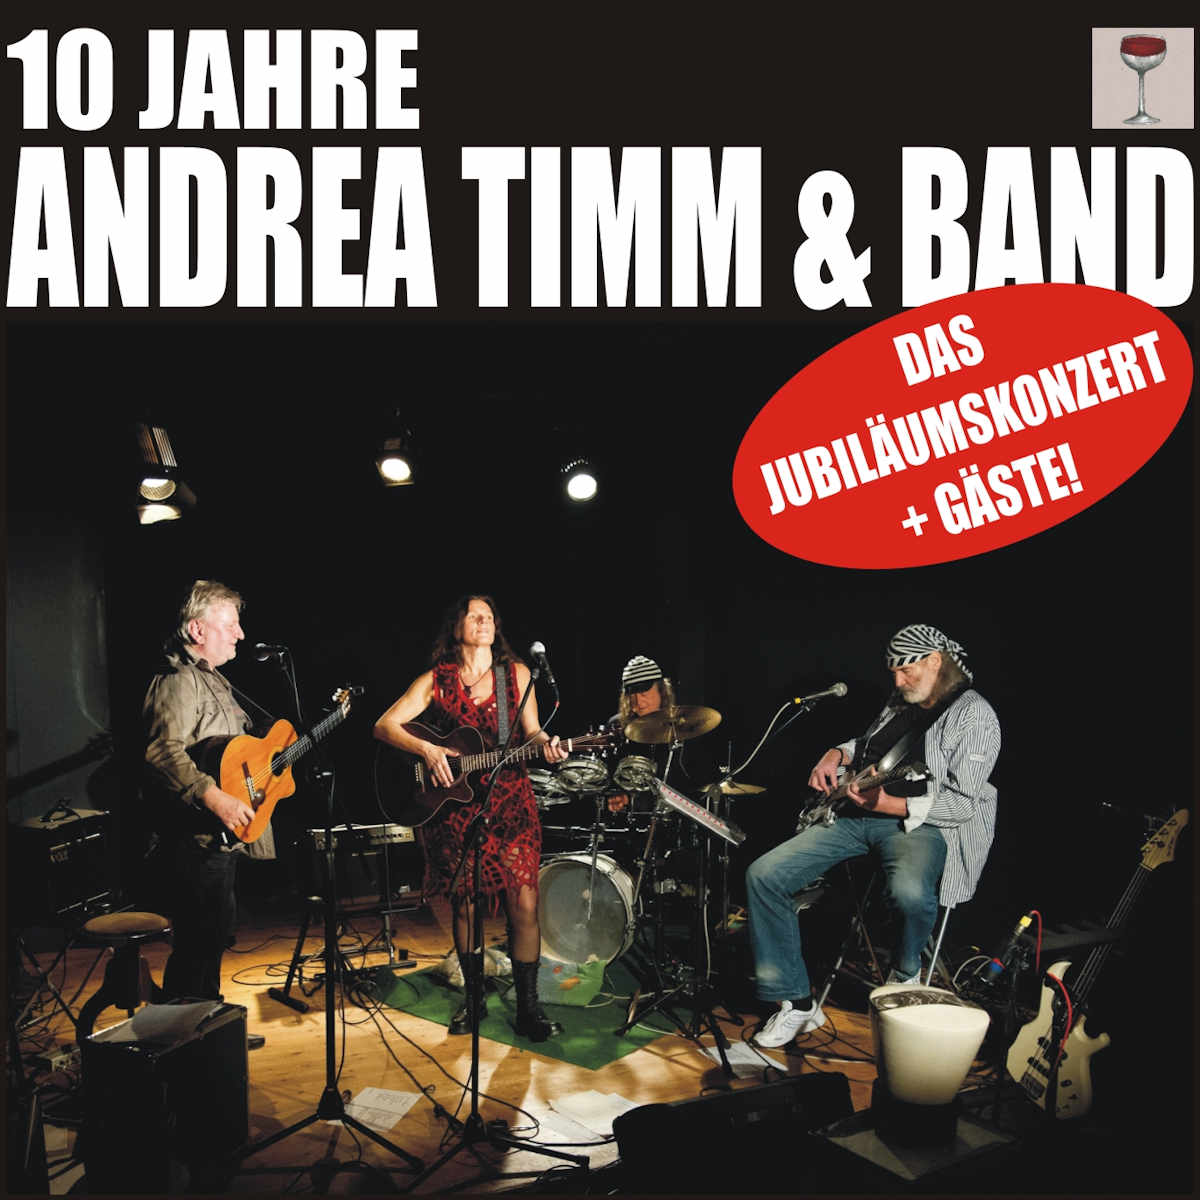 Andrea Timm und Band Jazzclub Schlot Berlin